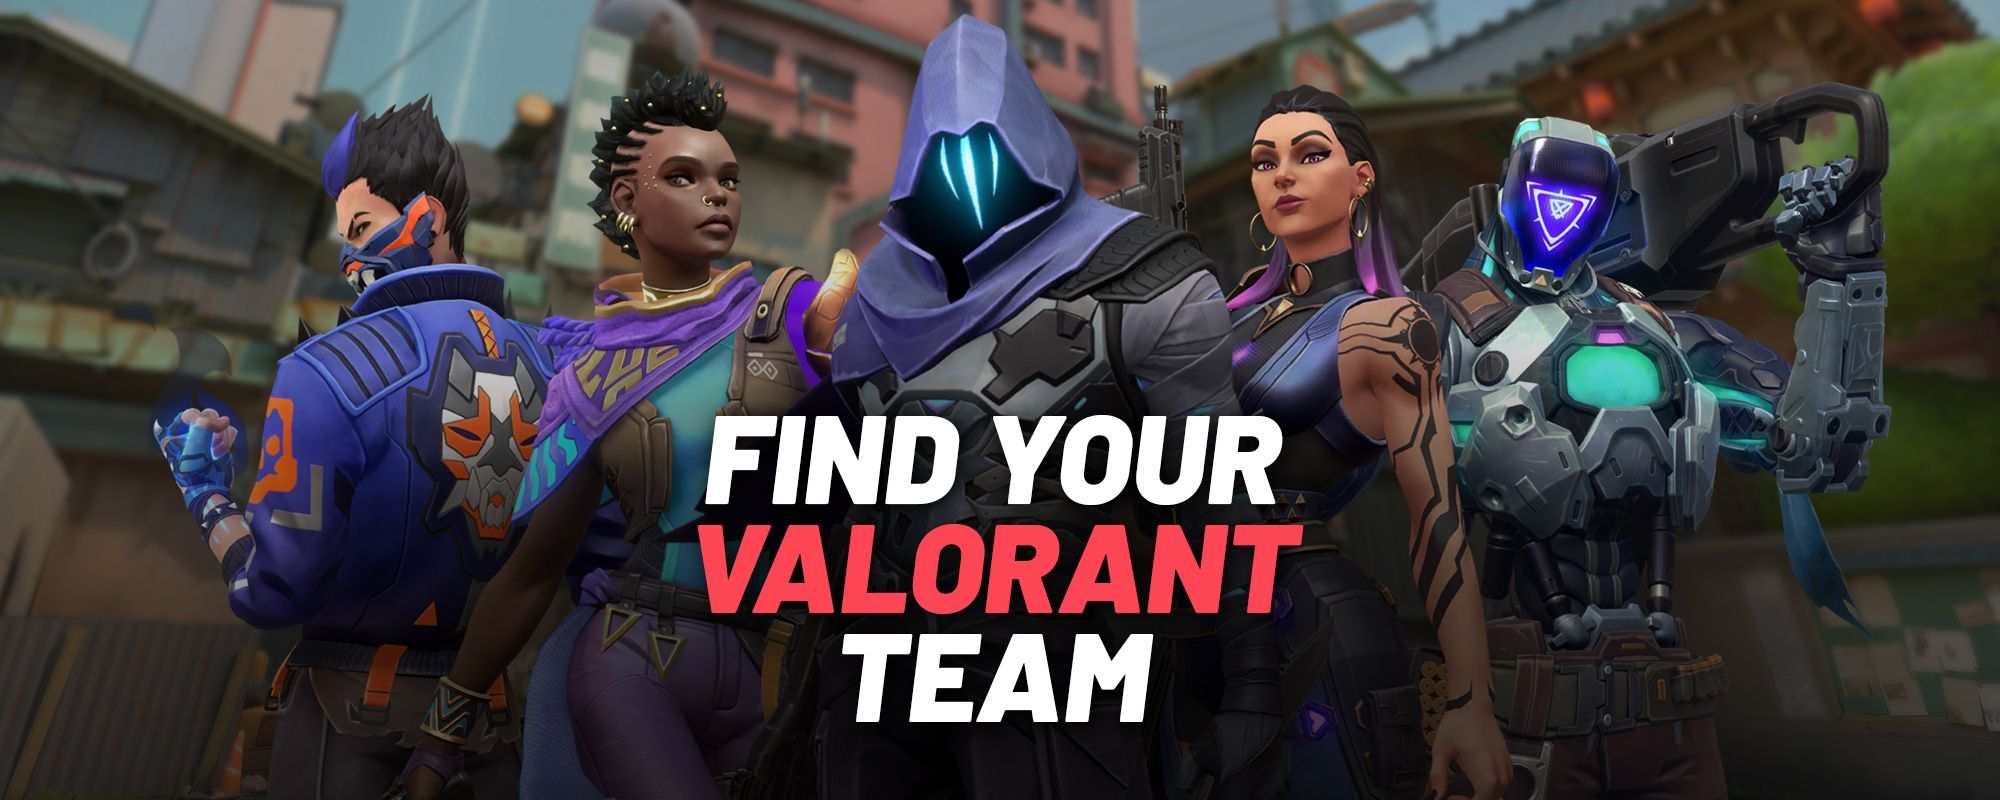 Team Valorant